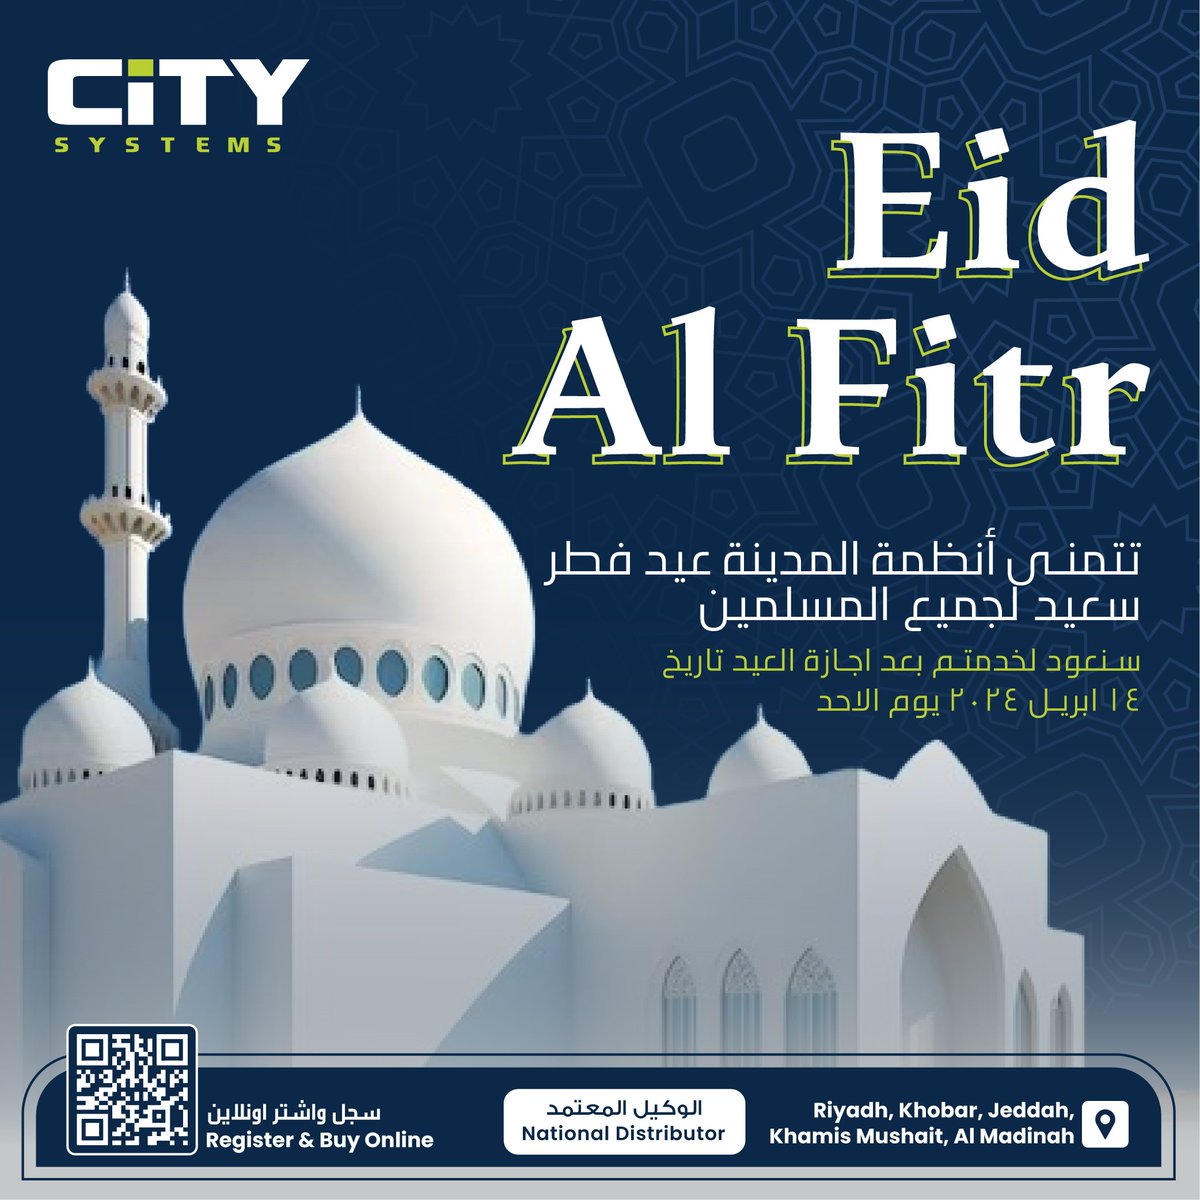 فريق أنظمة المدينة يتمنى لكم عيد مبارك! كل عام وأنتم وعائلتكم بألف خير

Eid Mubarak! Wishing You and Your Family a Thousandfold of Goodness Every Year.

#eidmubarak